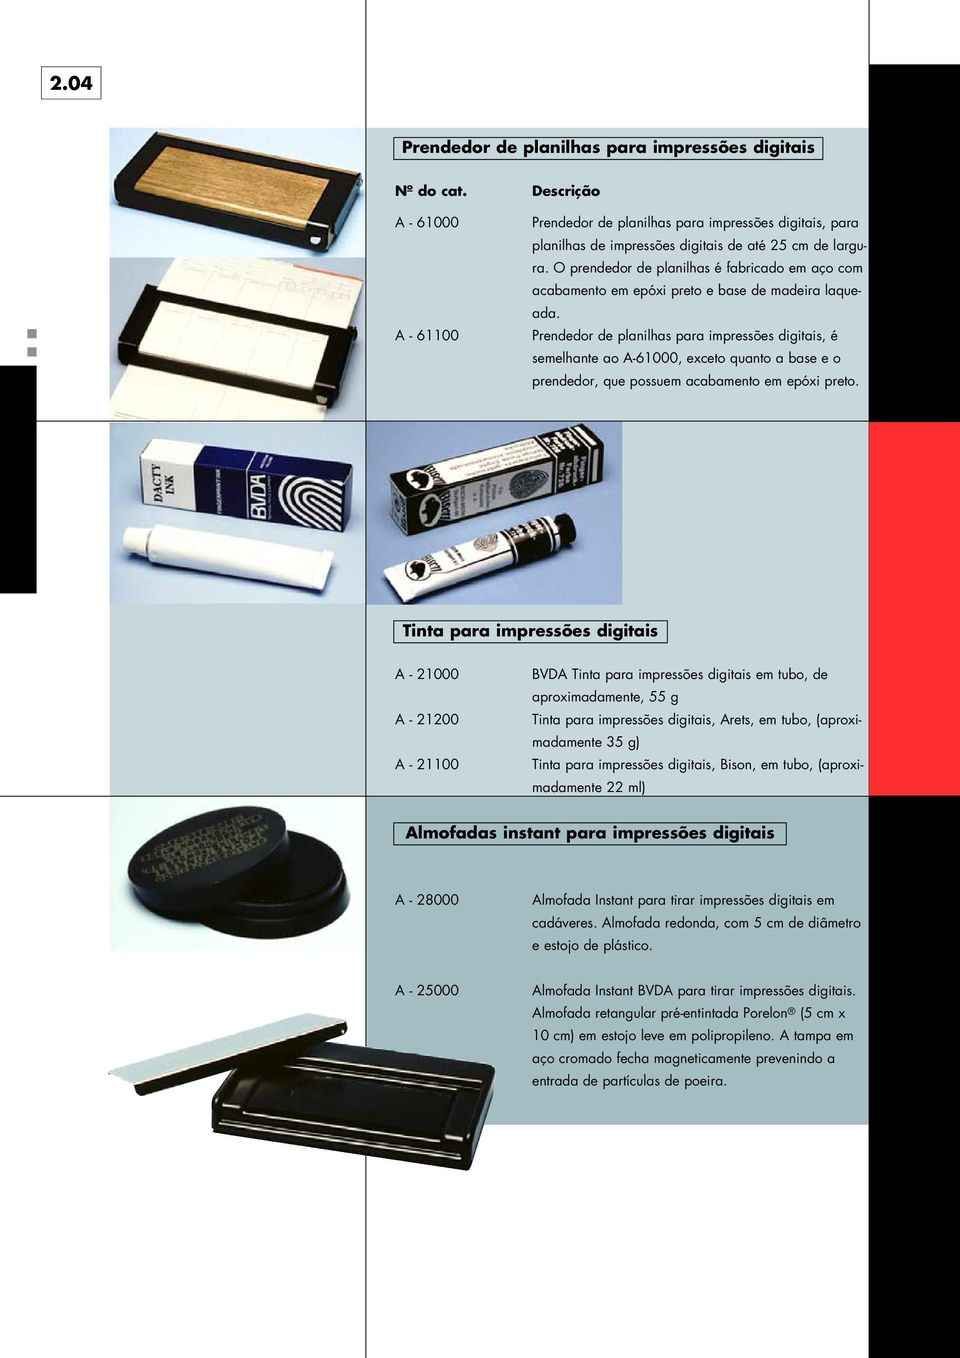 Prendedor de planilhas para impressões digitais, é semelhante ao A-61000, exceto quanto a base e o prendedor, que possuem acabamento em epóxi preto.